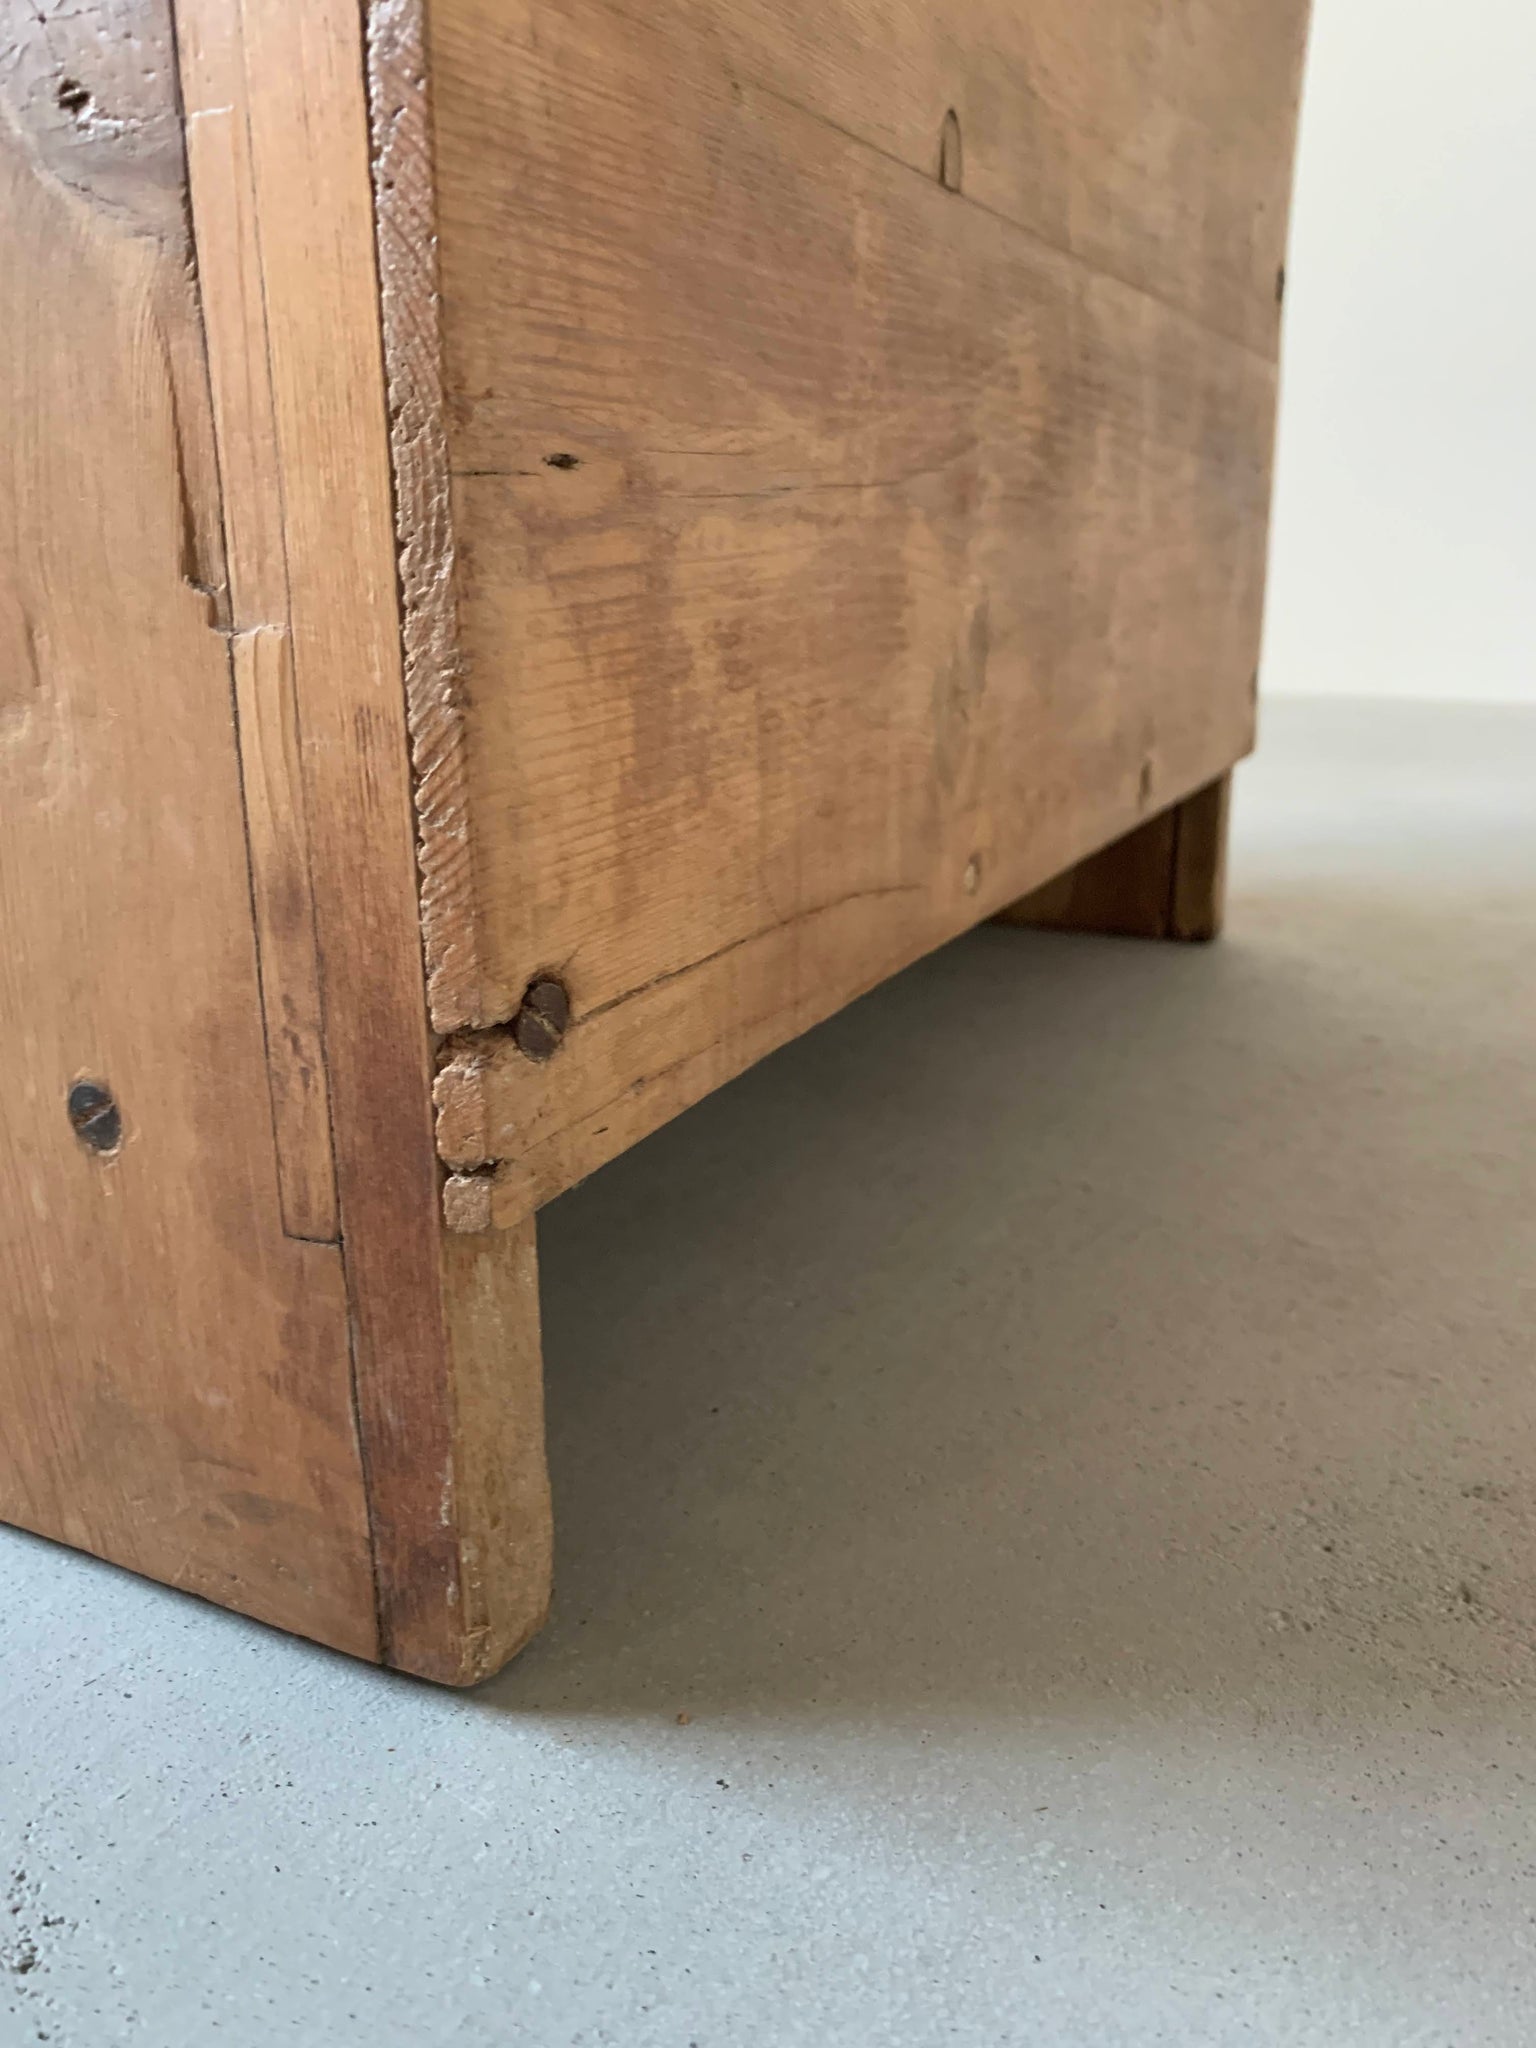 スモール パイン カップボード / small pine cupboard #0222